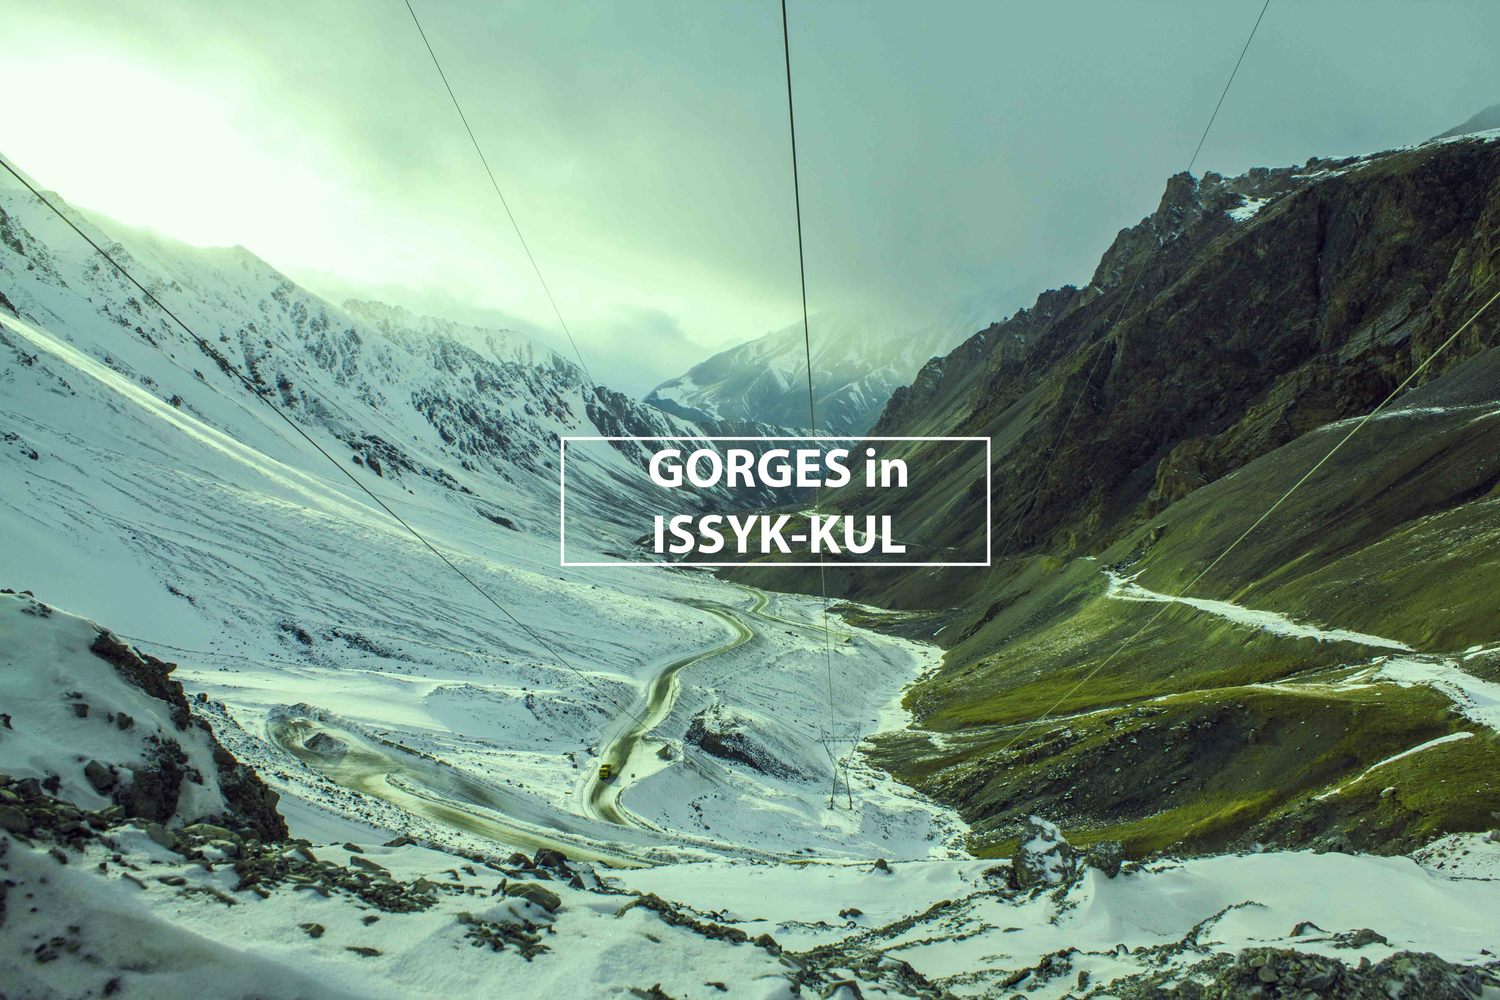 Gorges in Issyk-Kul region&nbsp;